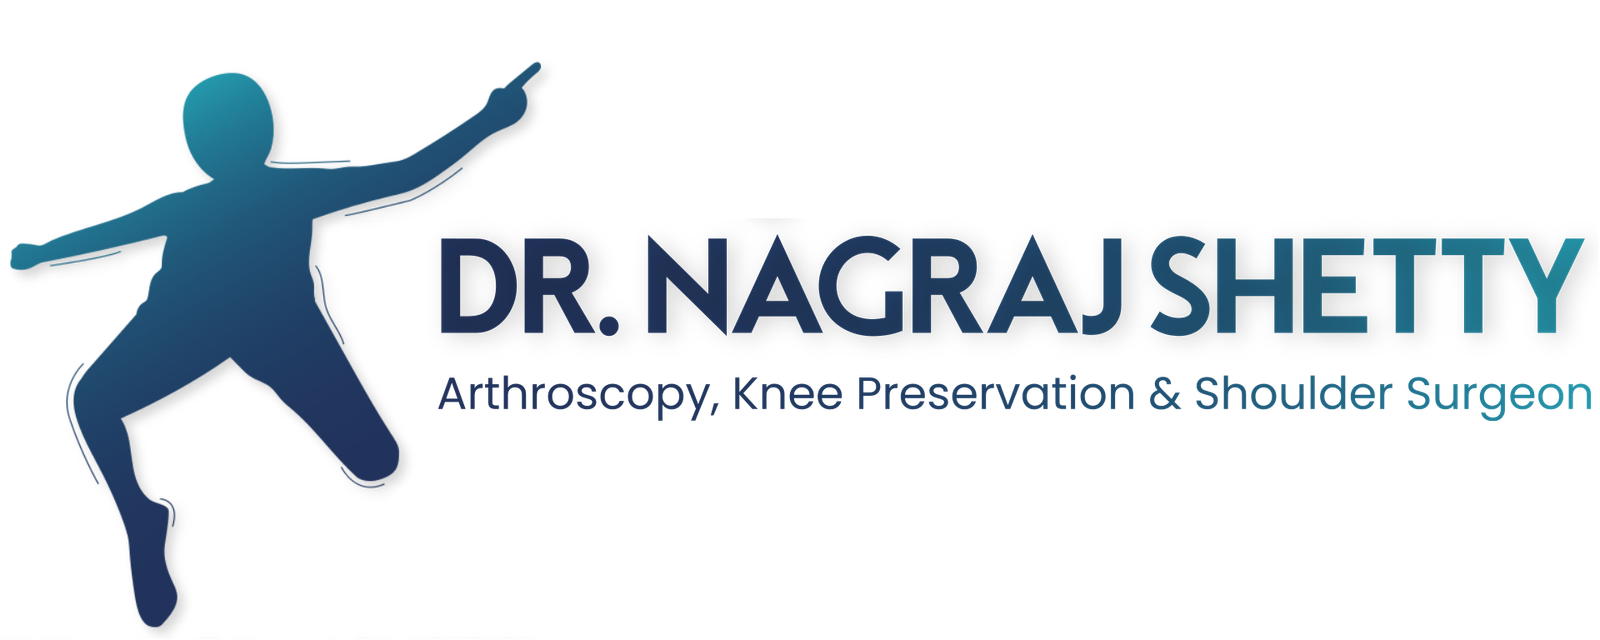 Dr Nagraj Shetty